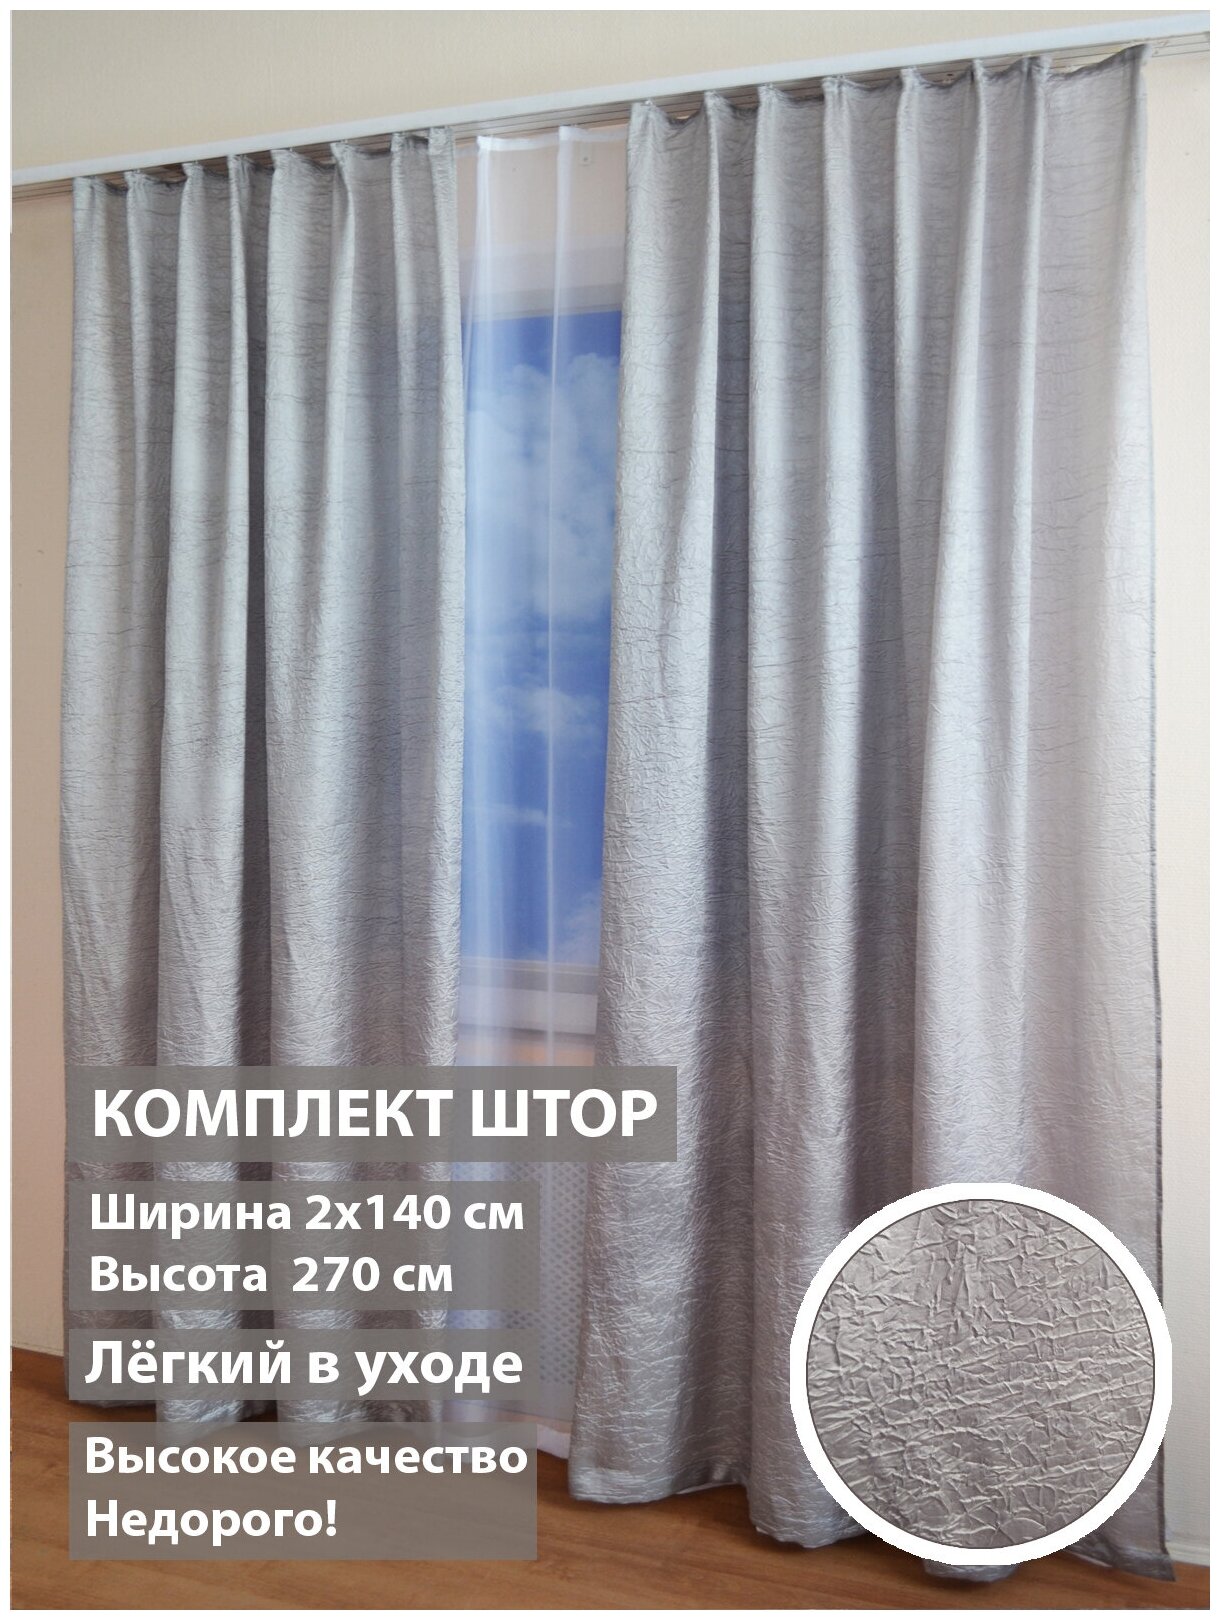 Комплект штор Домалетто Соната серый 140*270см - фотография № 1